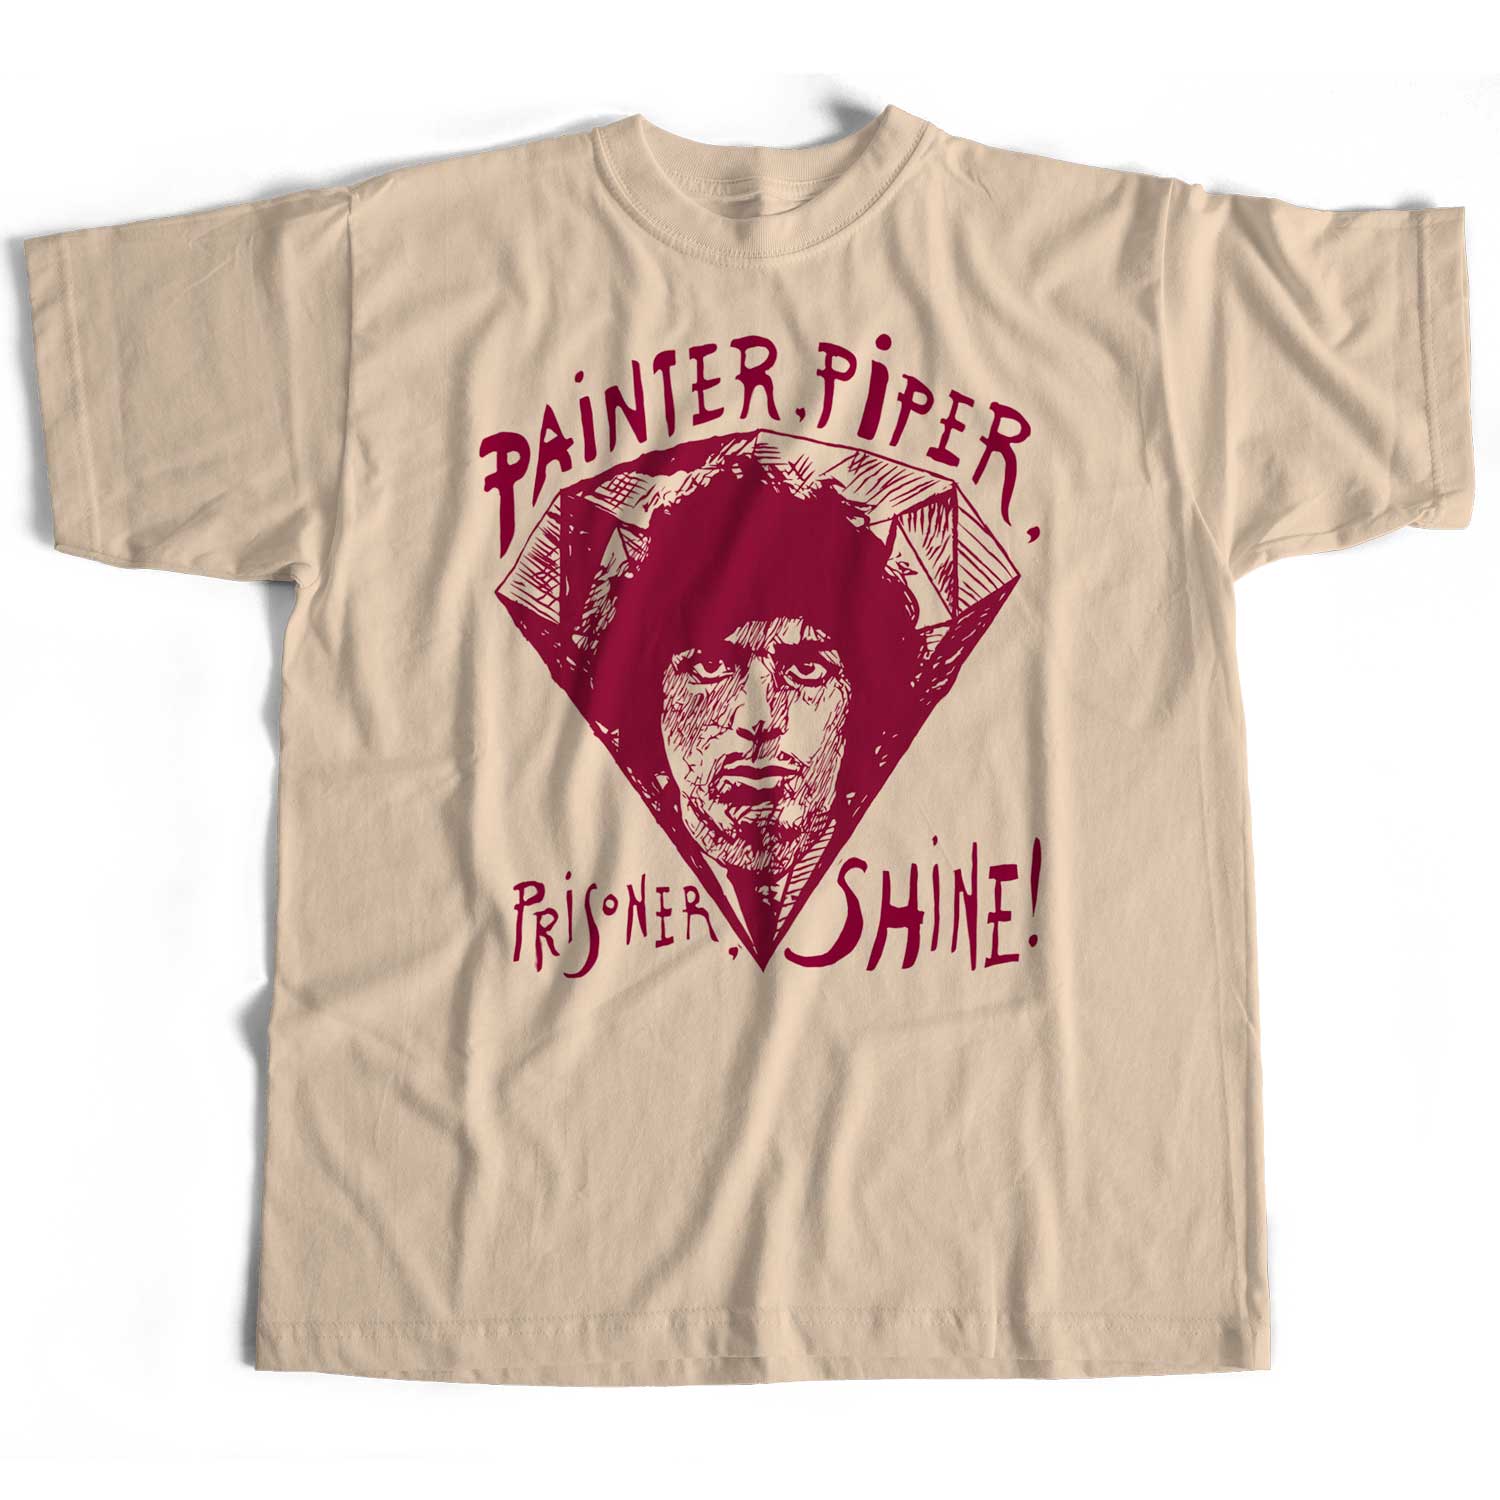 Old Skool Hooligans Inspired By Syd Barrett T Shirt - Painter, Piper, Prisoner, Shine